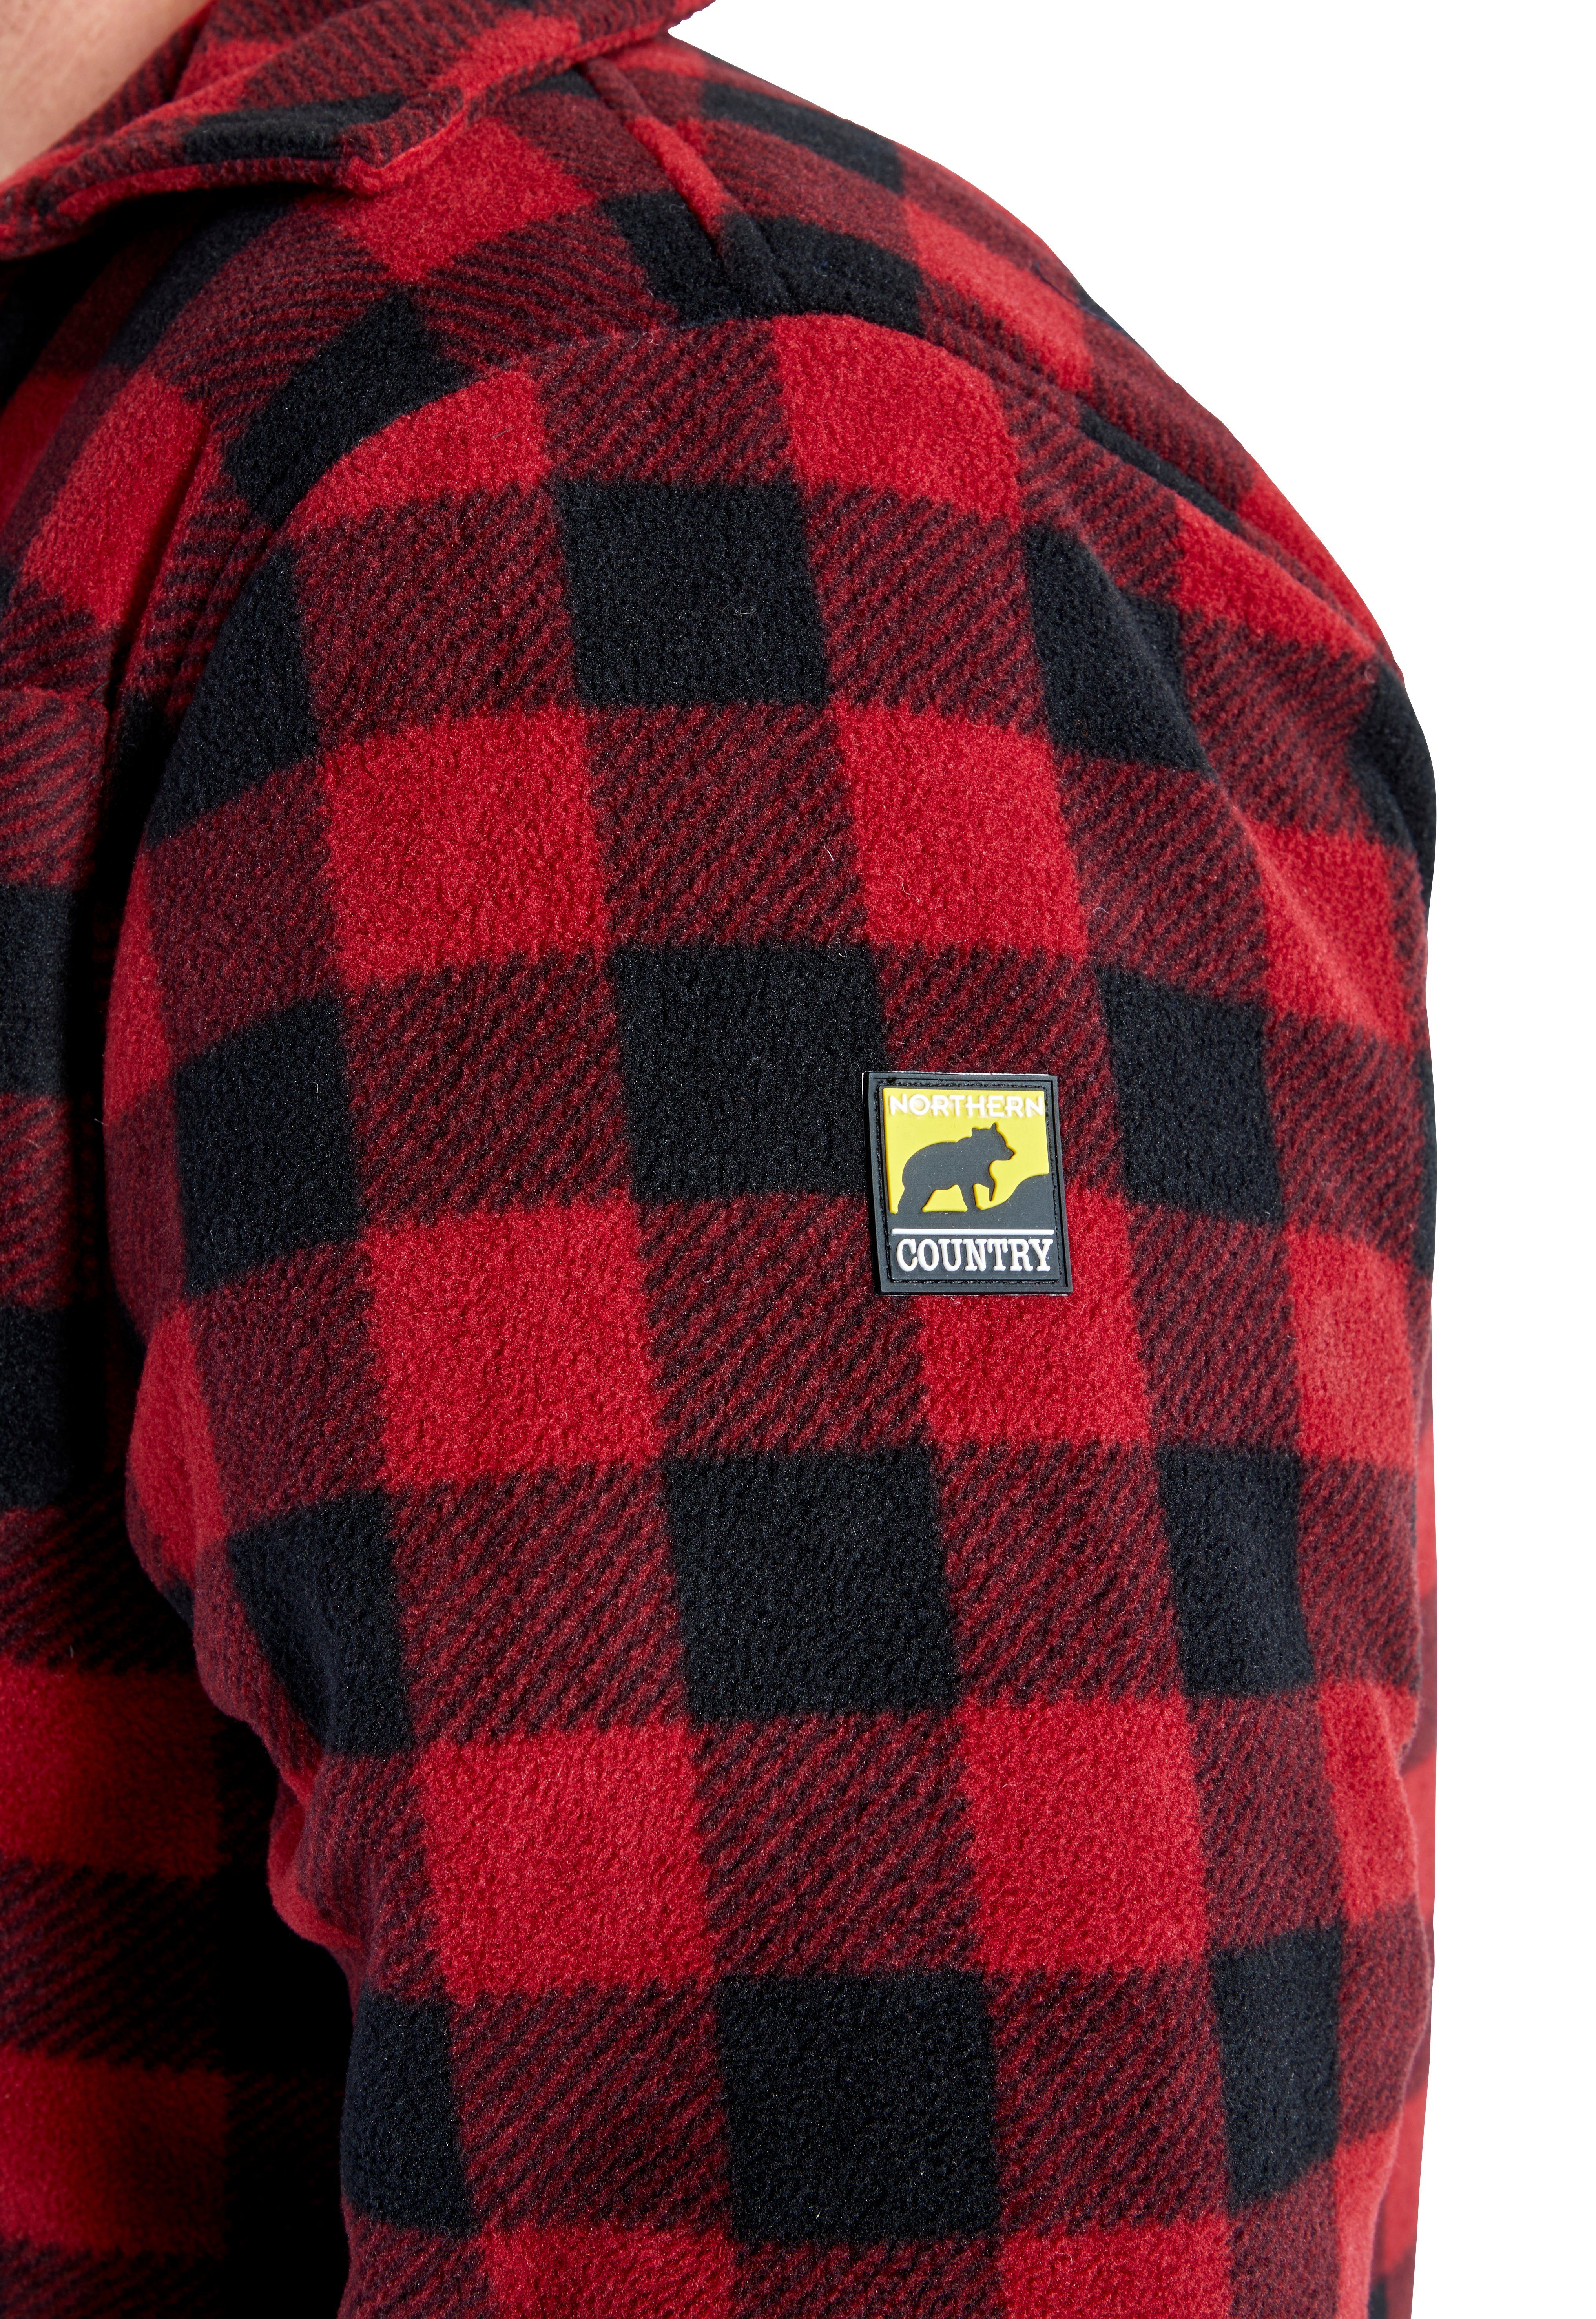 Jacke offen mit verlängertem Rücken, (als zu oder 5 Taschen, tragen) Flanellhemd rot-schwarz Northern mit Country Flanellstoff zugeknöpft Hemd gefüttert, warm